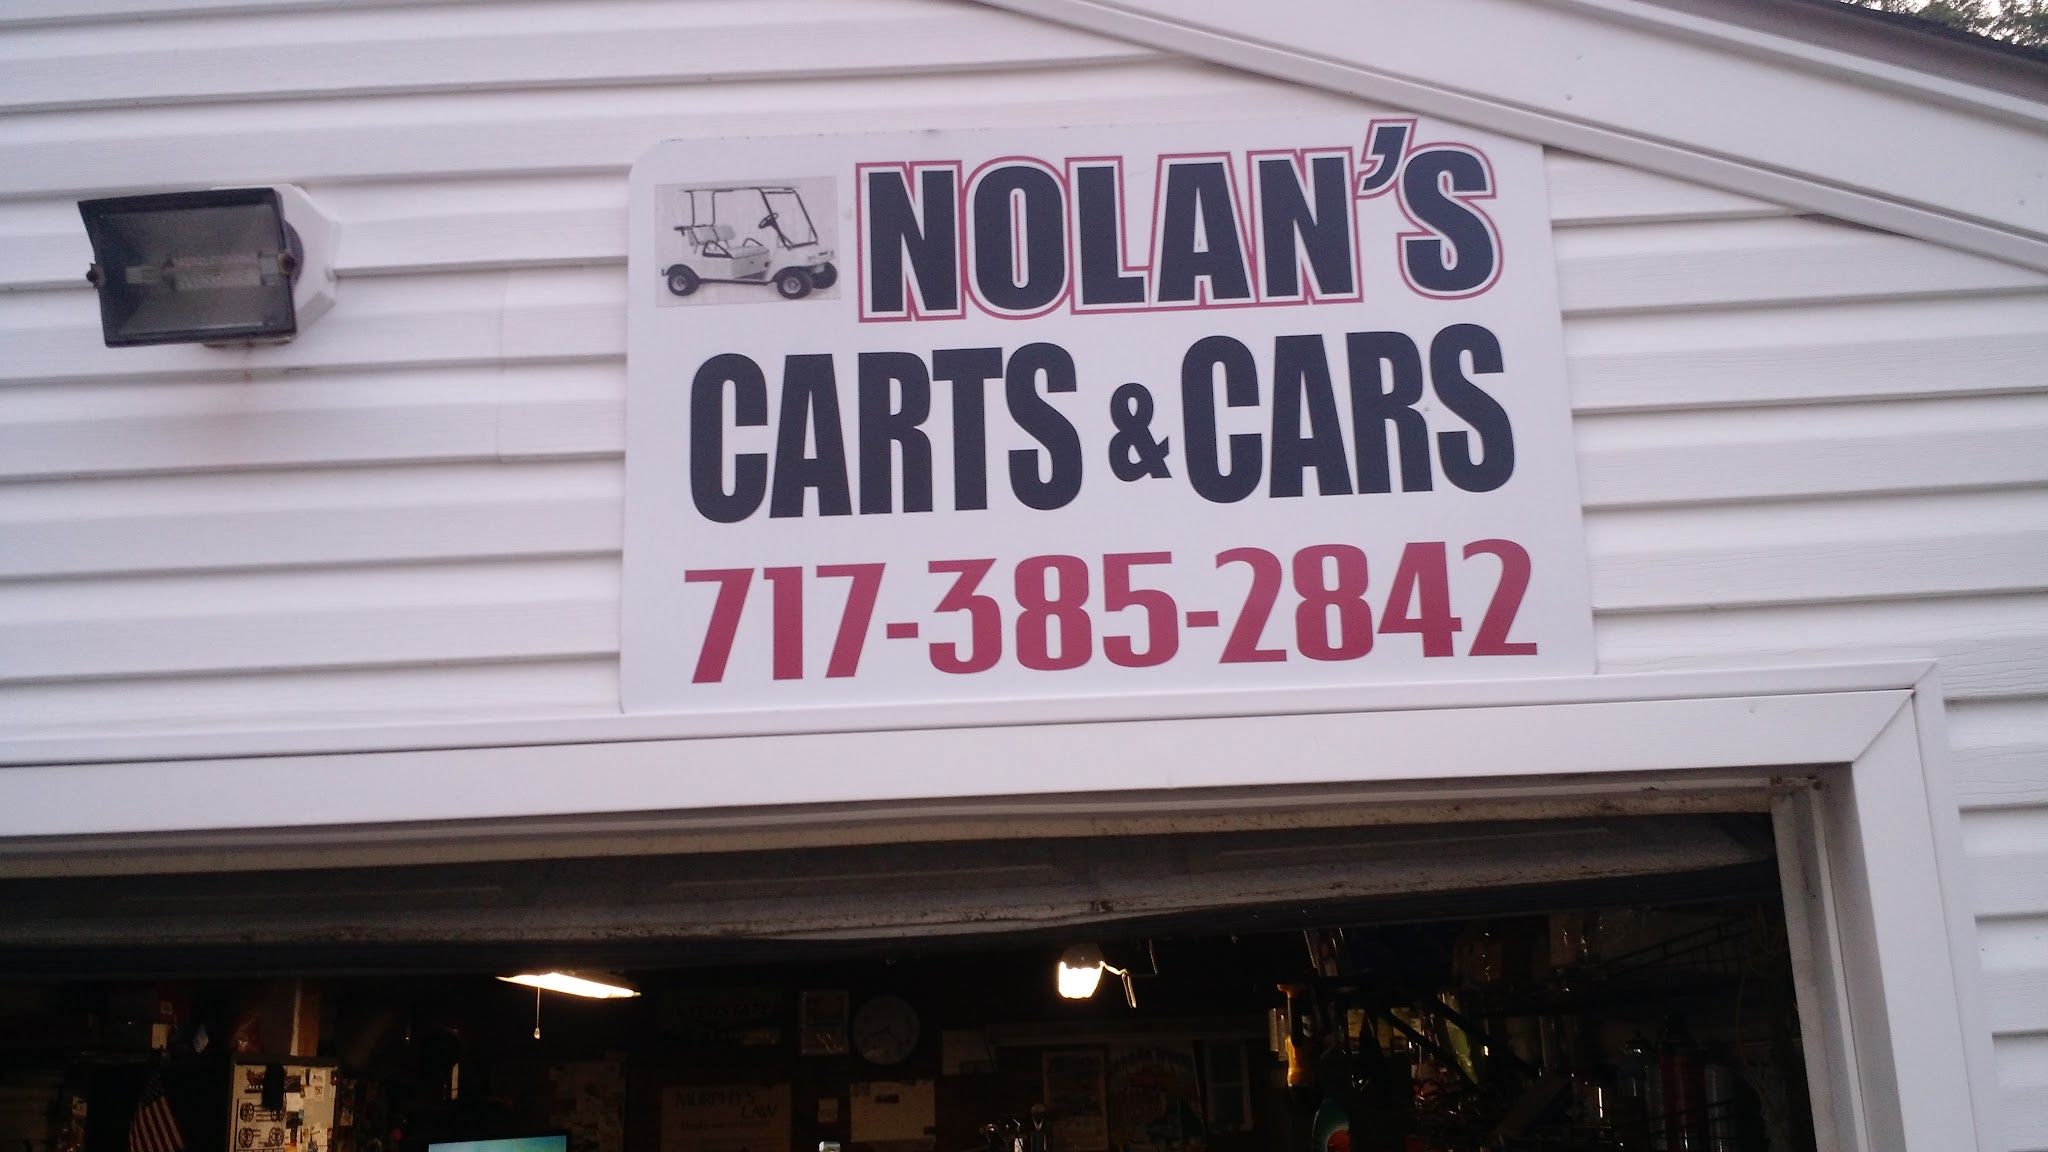 Nolan's Carts & Cars